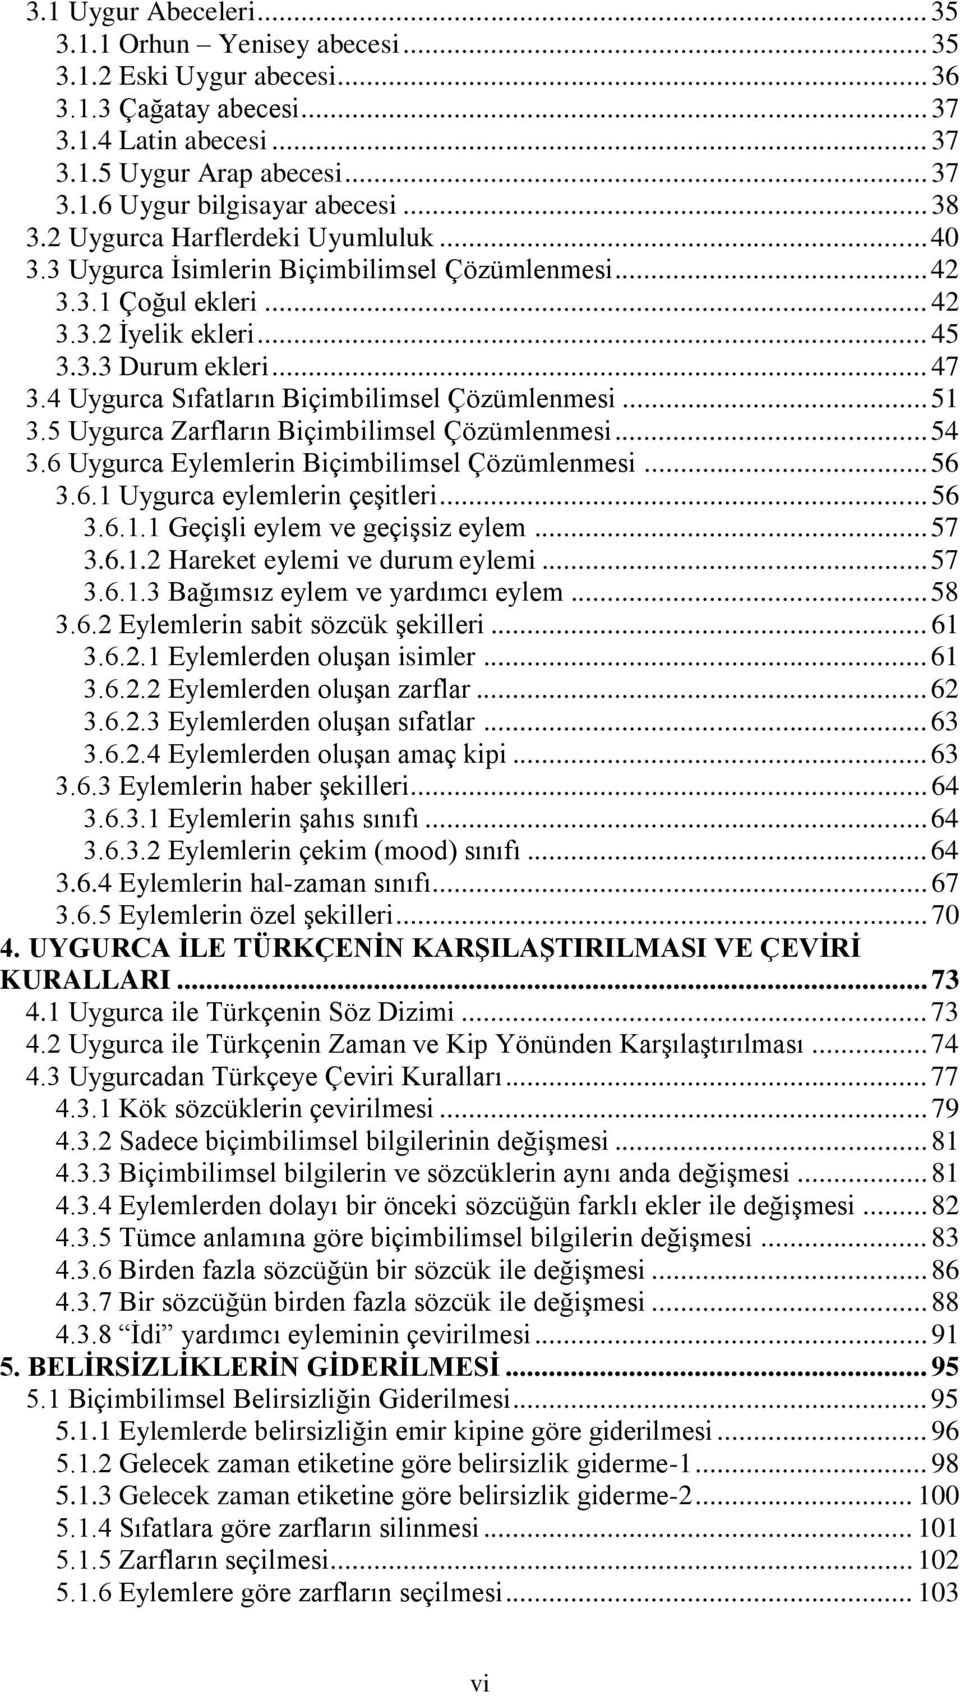 4 Uygurca Sıfatların Biçimbilimsel Çözümlenmesi... 51 3.5 Uygurca Zarfların Biçimbilimsel Çözümlenmesi... 54 3.6 Uygurca Eylemlerin Biçimbilimsel Çözümlenmesi... 56 3.6.1 Uygurca eylemlerin çeşitleri.